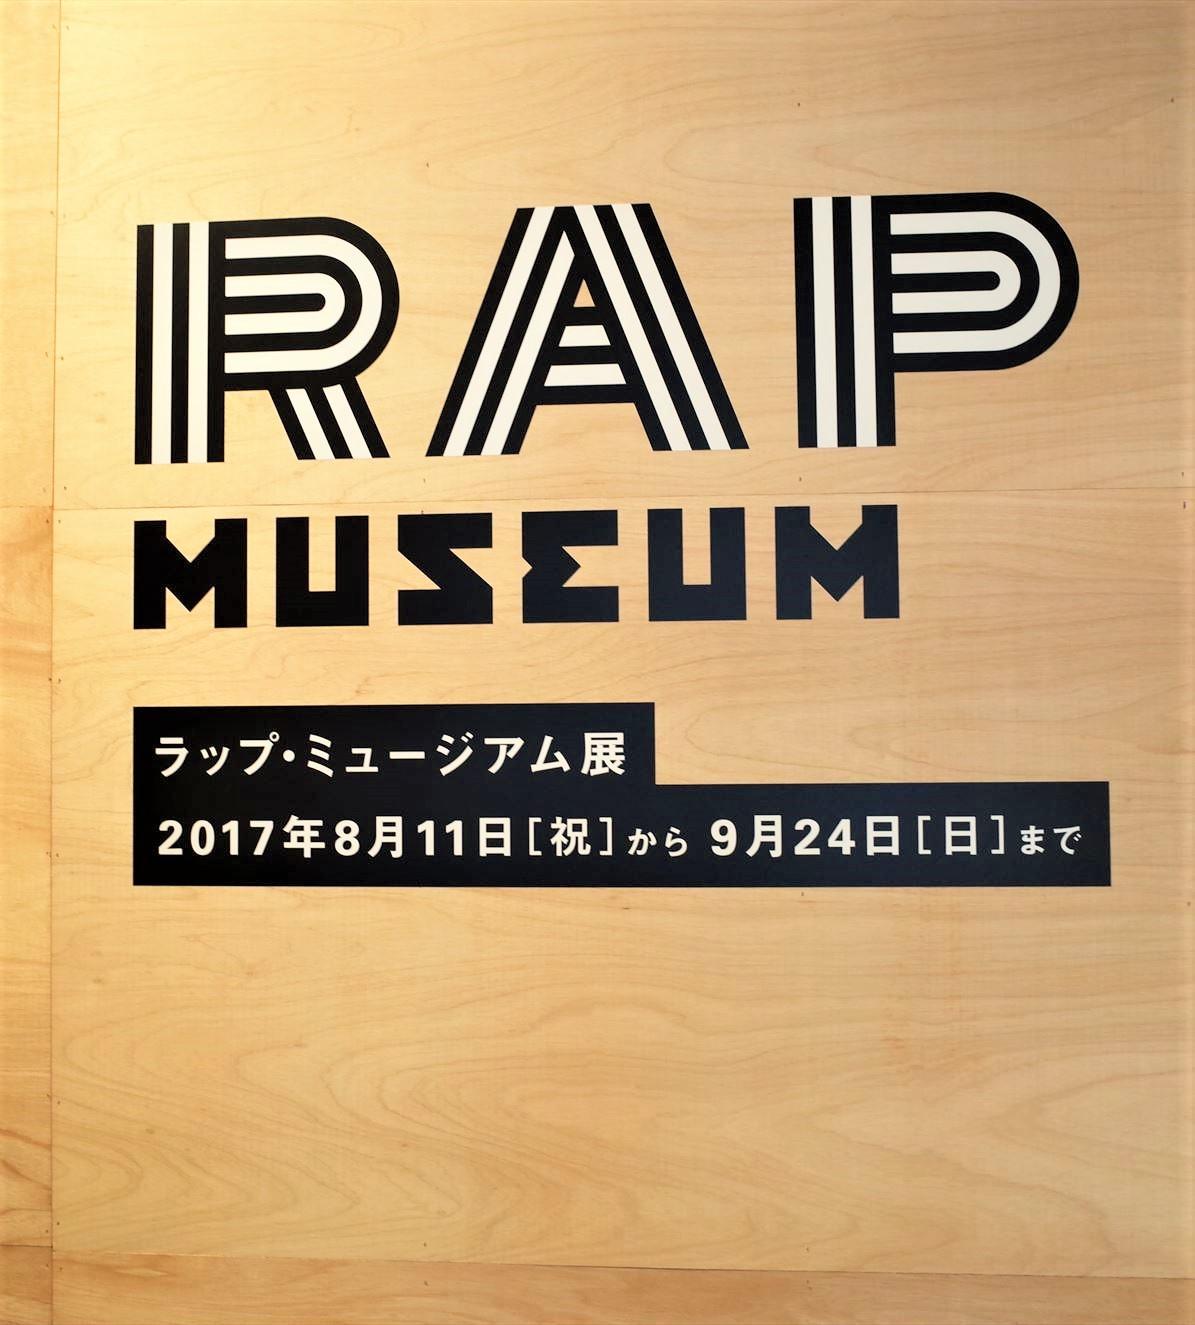 ここ数年、フリースタイルダンジョンで人気が爆発。日本初のラップ展?! この夏は「ラップ・ミュージアム展」に行こう